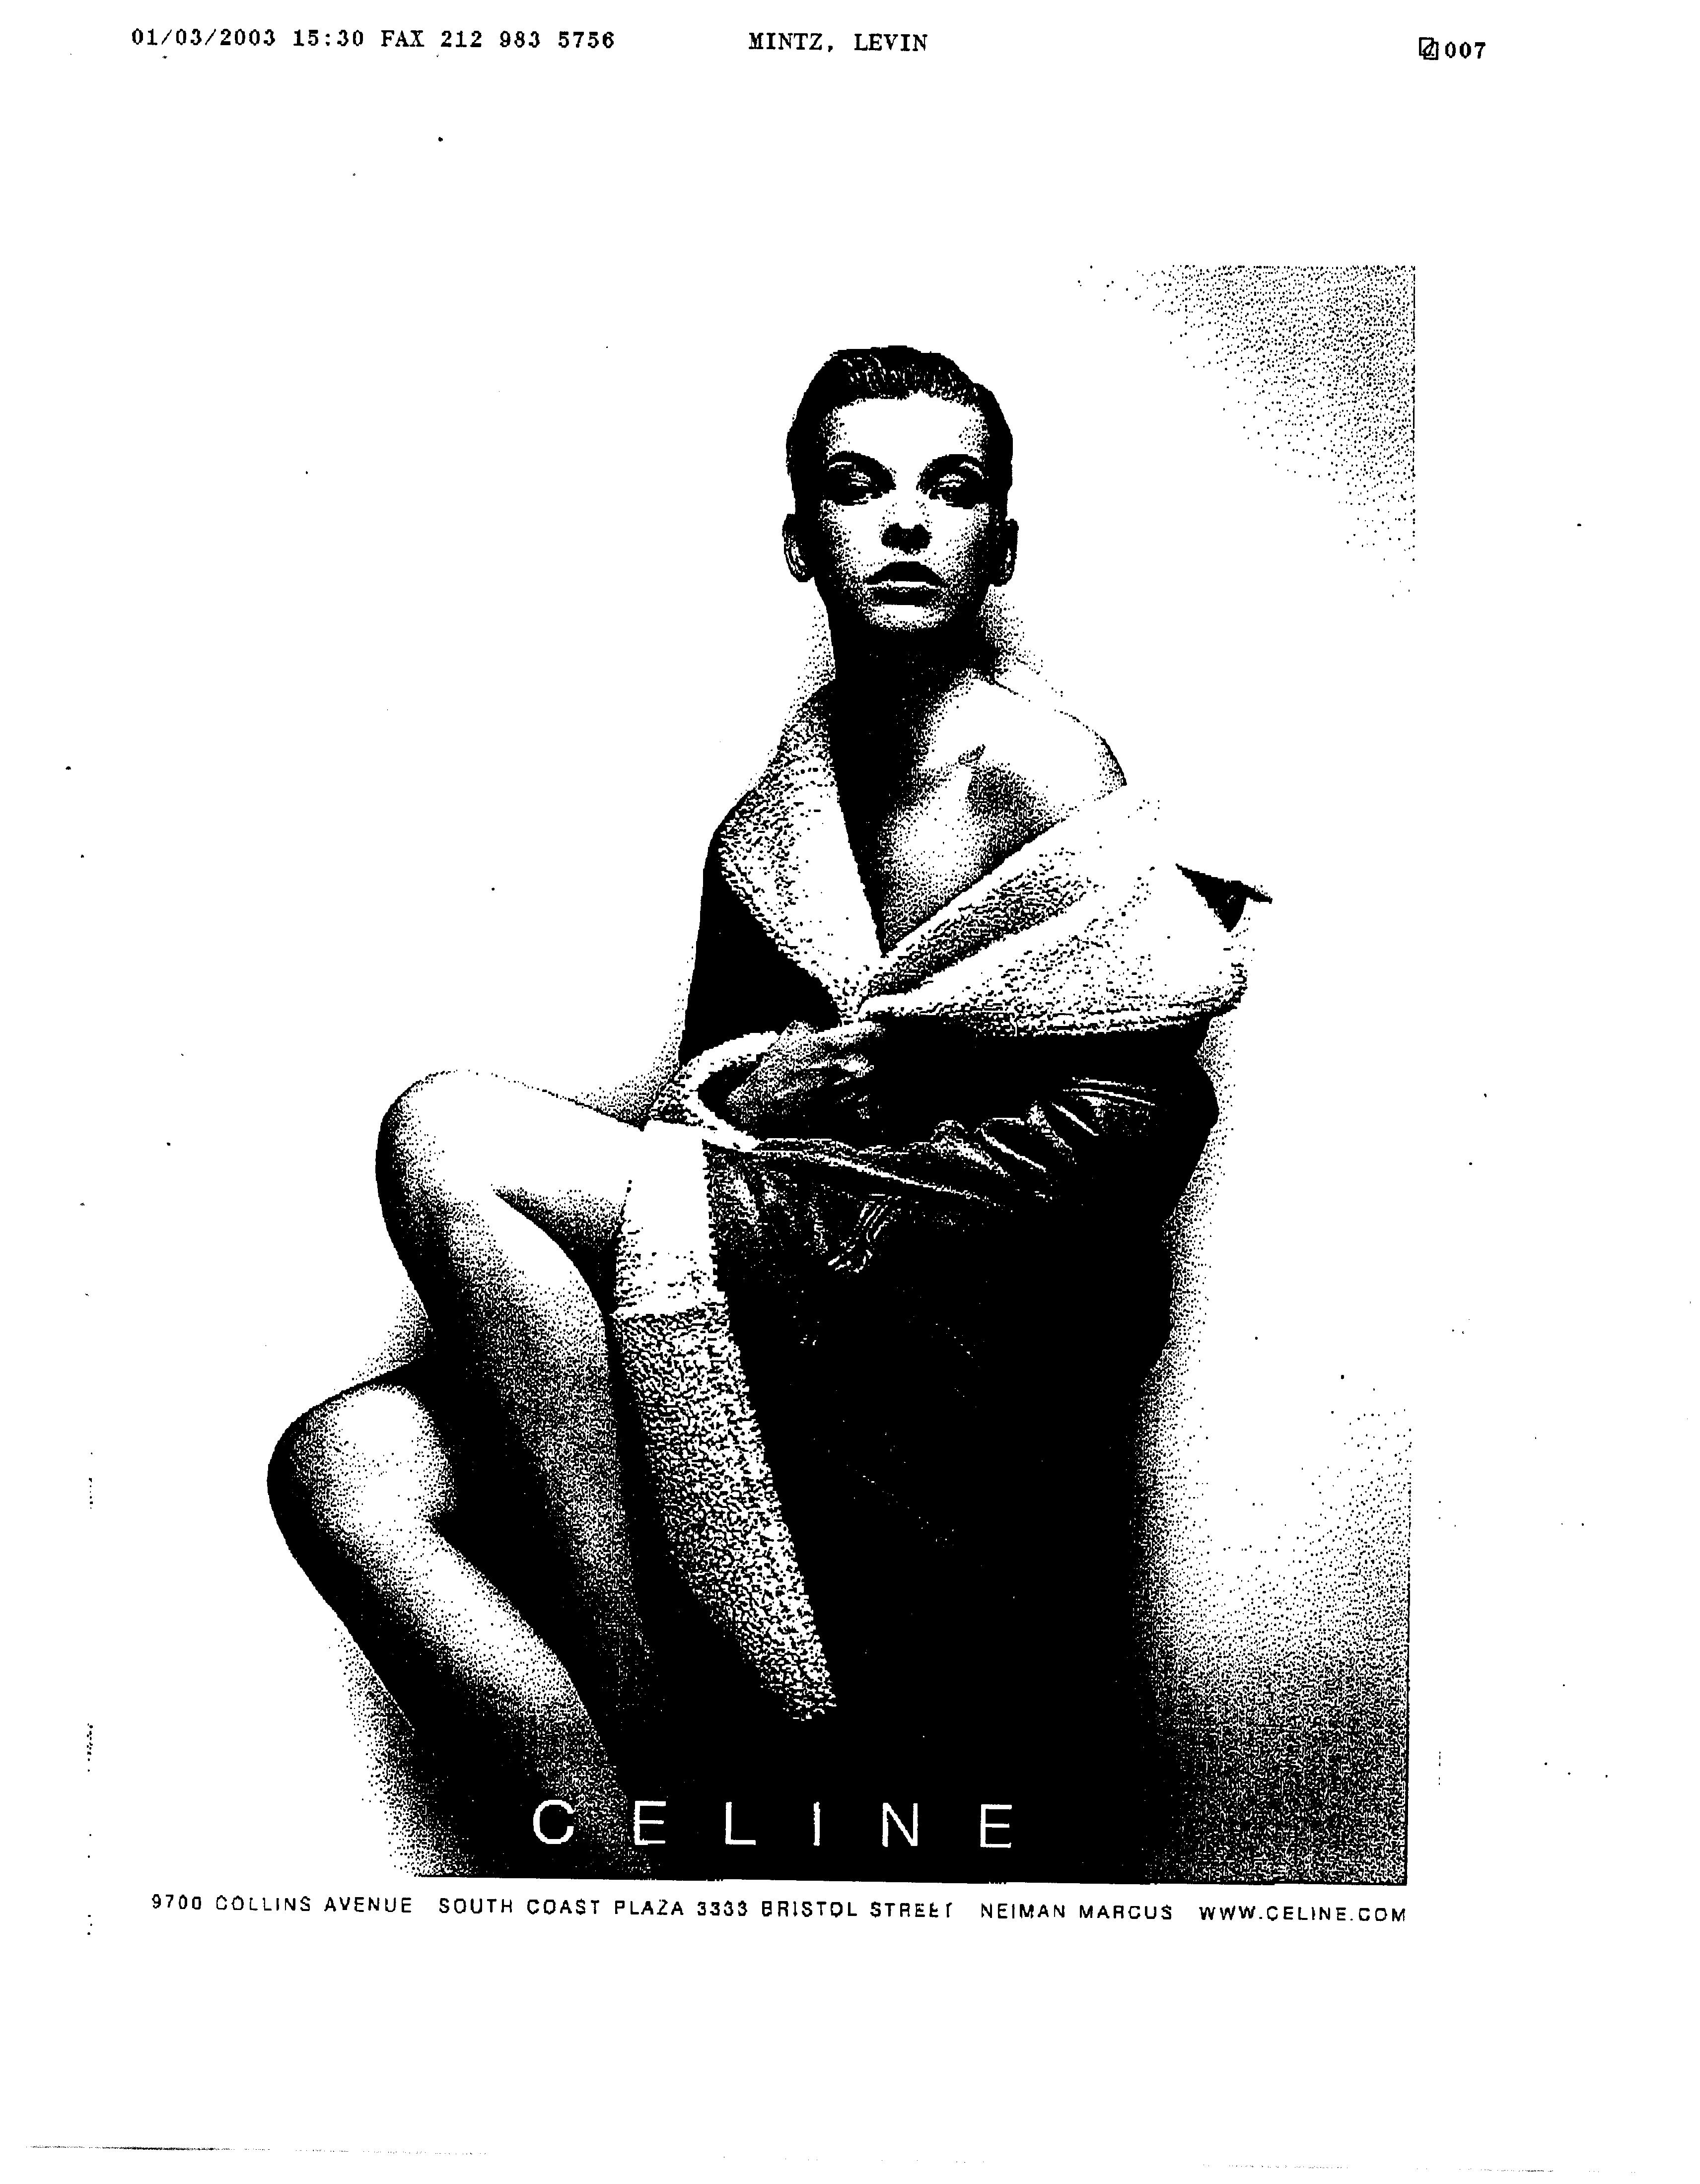 CELINE - Celine Trademark Registration